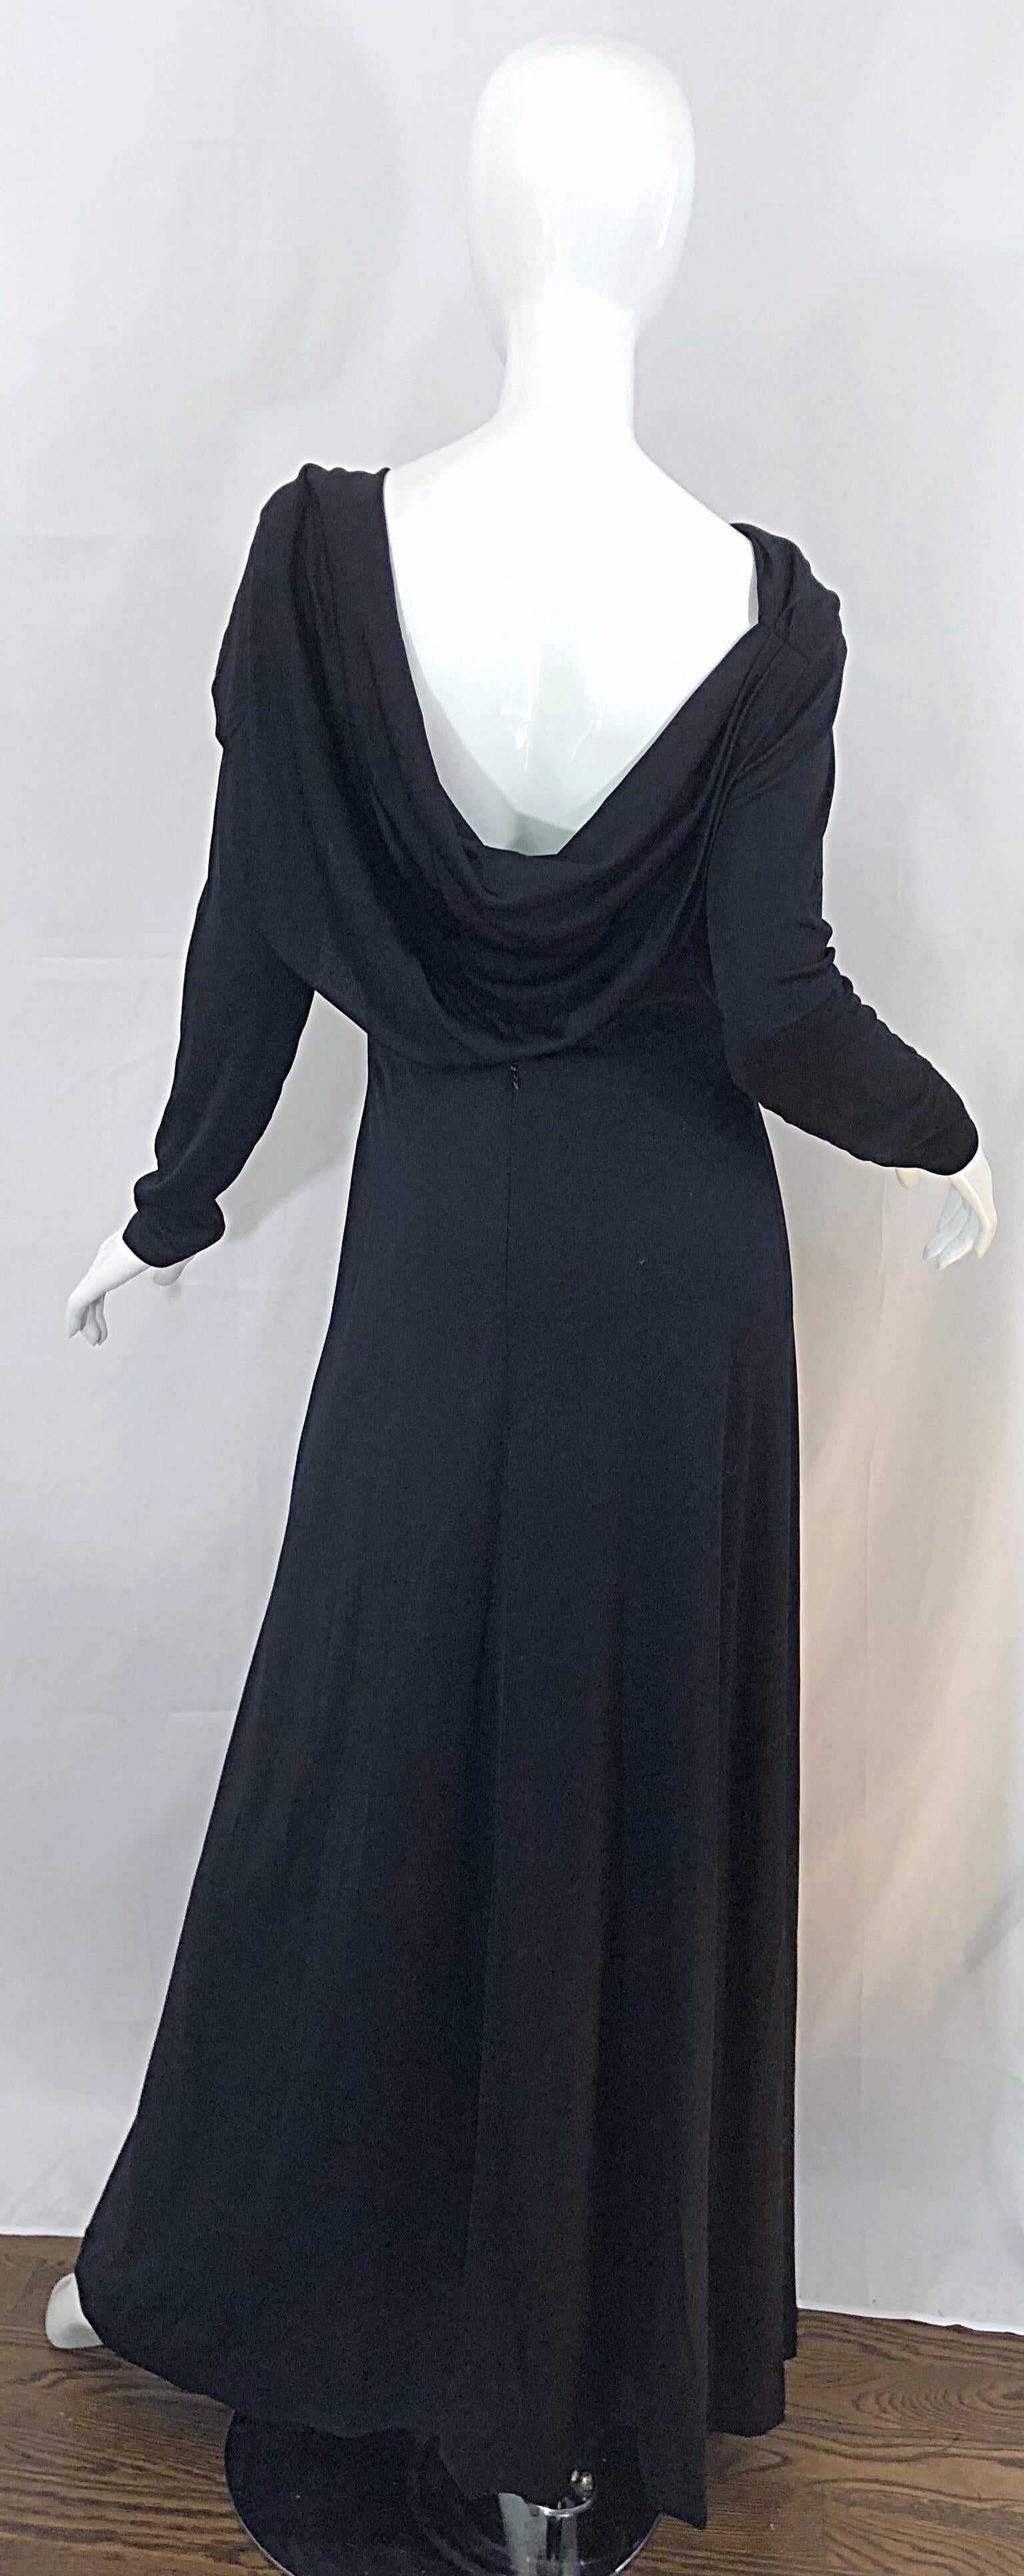 Wunderschönes 70er Jahre ESTEVEZ Couture schwarzes langärmeliges Jersey-Cape-Kleid! Mit einem dramatischen hohen Halsausschnitt und einem wunderschönen tief ausgeschnittenen, drapierten Rücken, der genau die richtige Menge an Haut zeigt. Von der